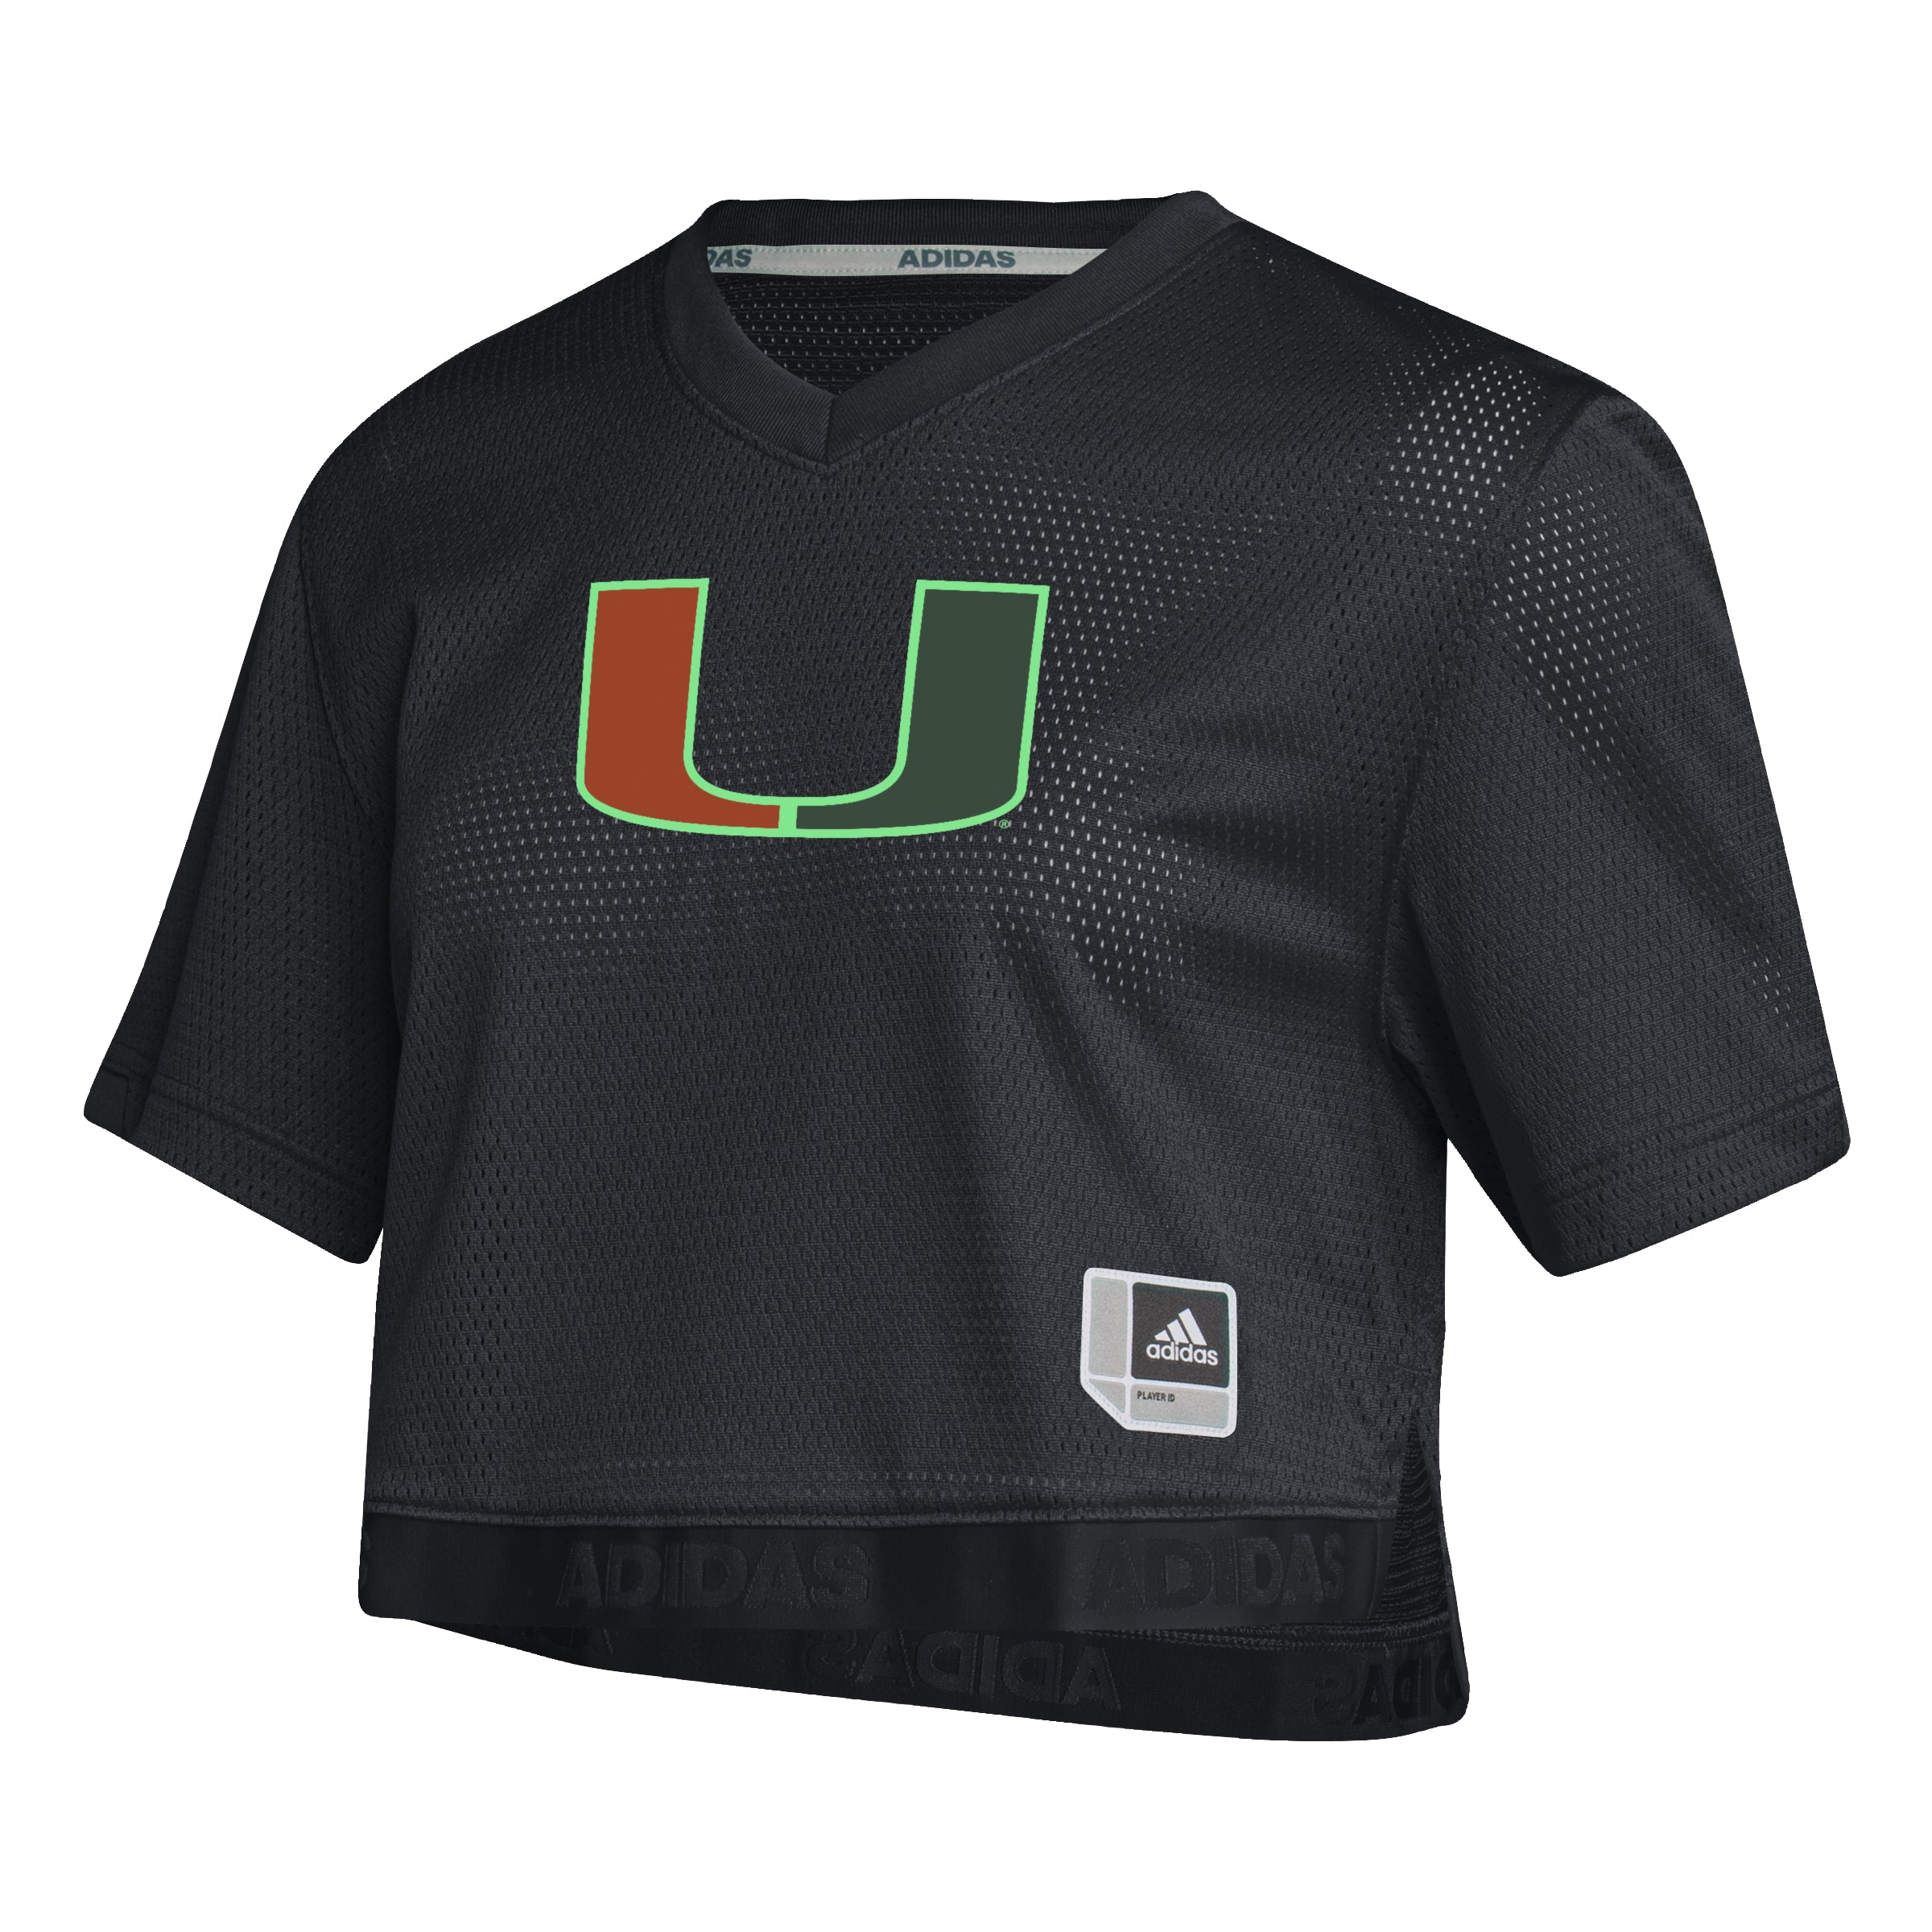 Miami Hurricanes adidas Womens Primary Logo Crop Top Jersey - Black